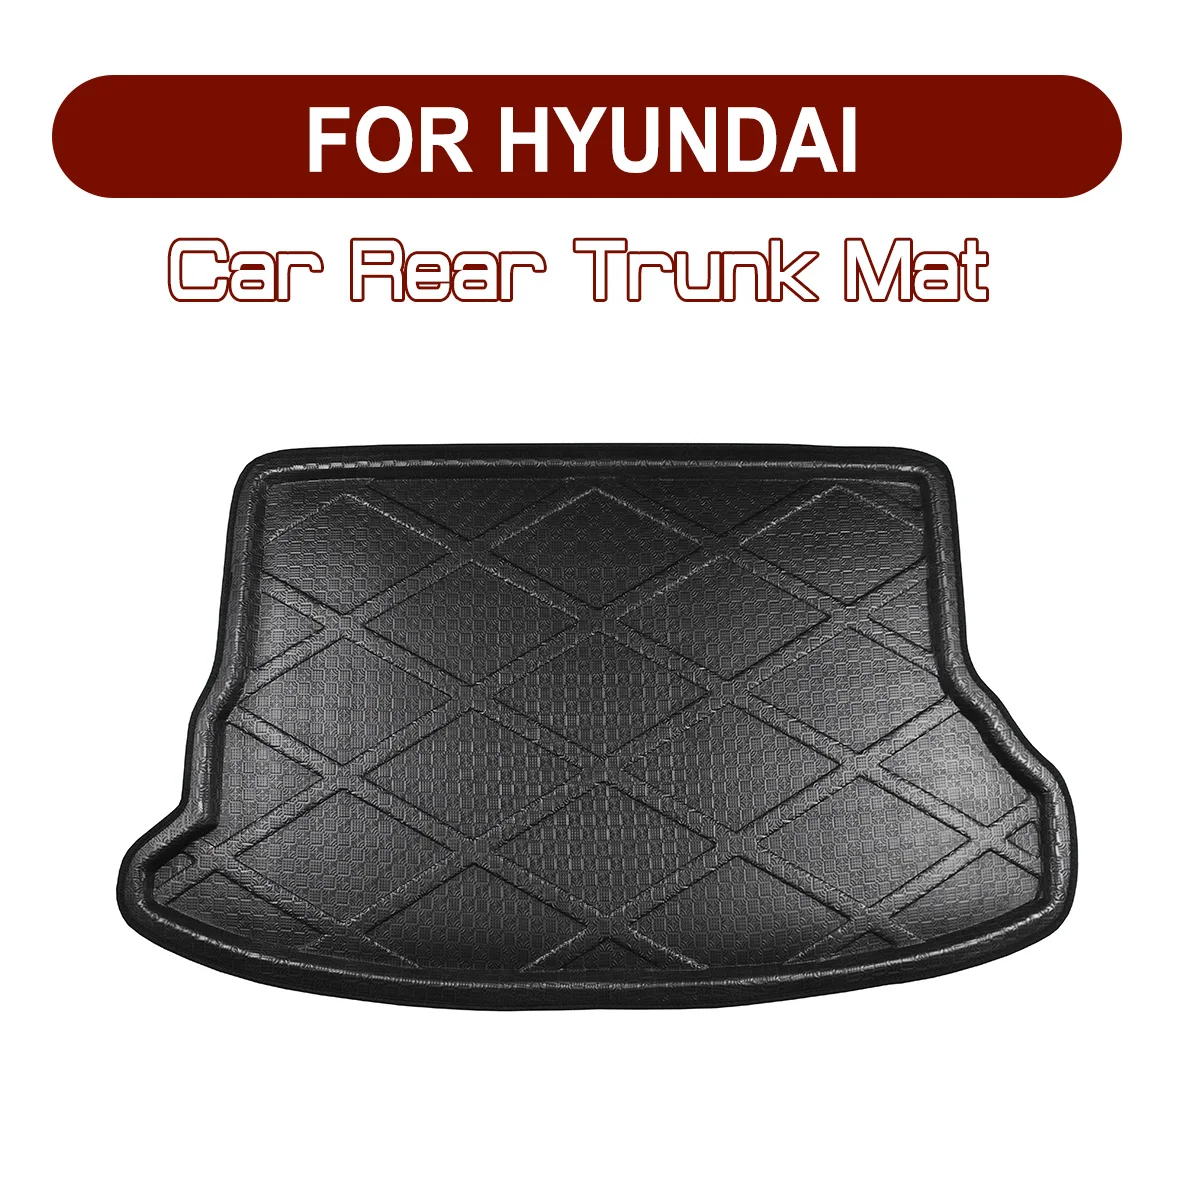 

Car Rear Trunk Boot Mat Floor Mats Cargo Mat Waterproof FOR Hyundai TUCSON Sonata Genesis IX25 IX35 IX45 SANTAFE ELANTRA Verna